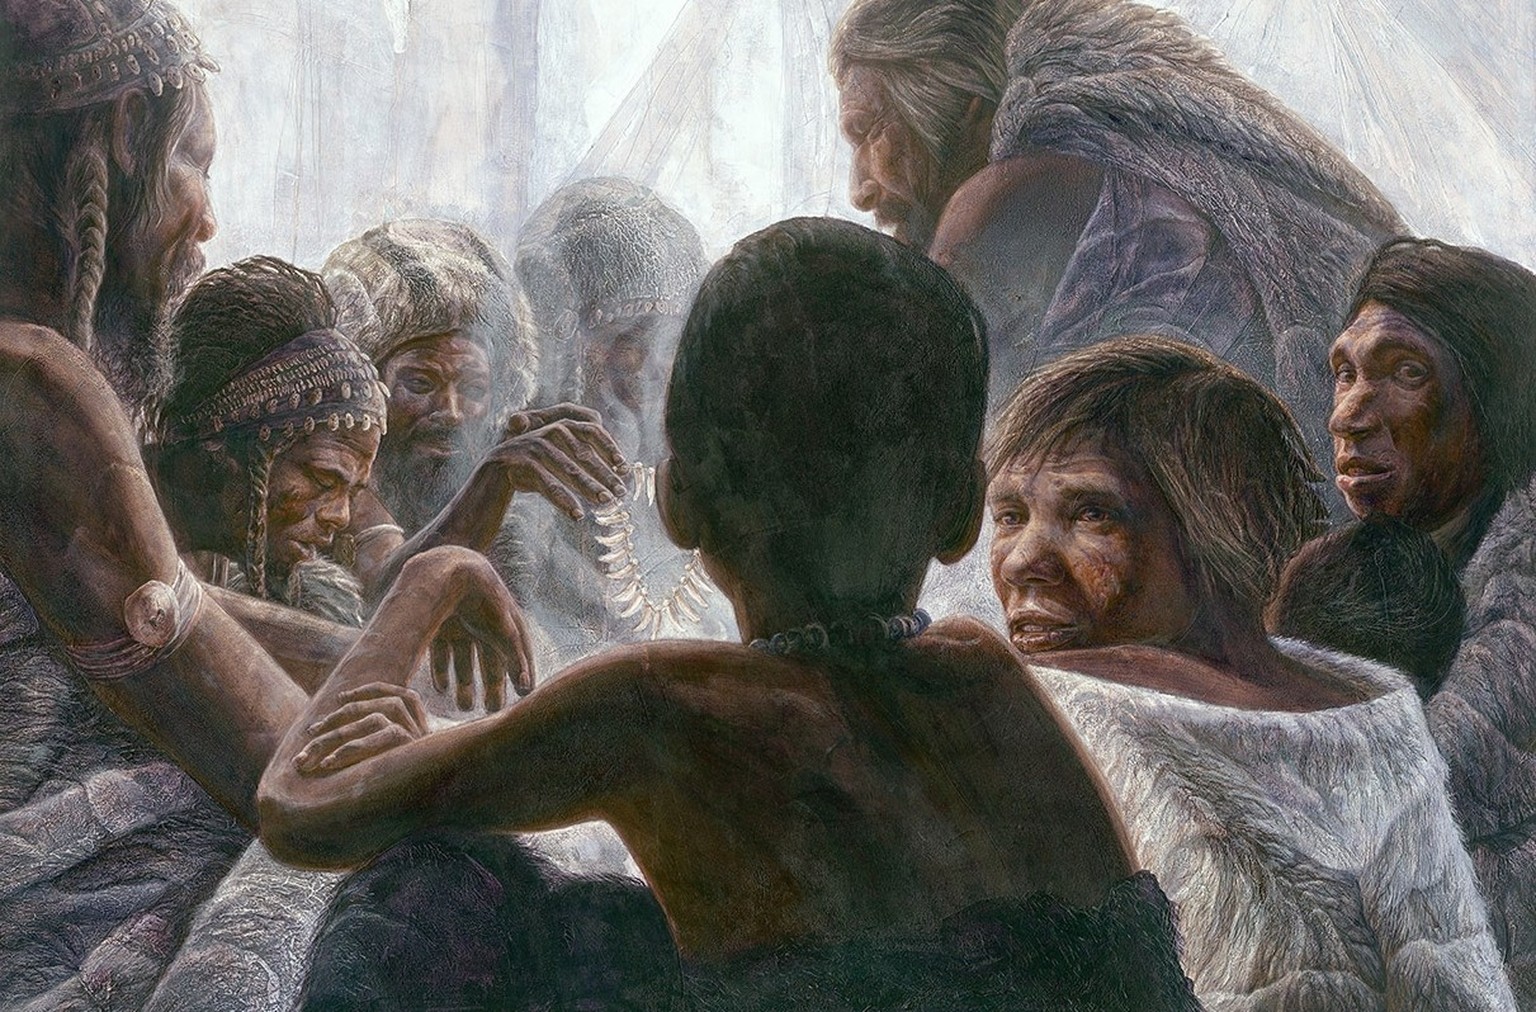 Künstlerische Darstellung von modernen Menschen und Neandertalern gemeinsam in einer Höhle.
https://www.pinterest.ch/pin/792563234399307086/